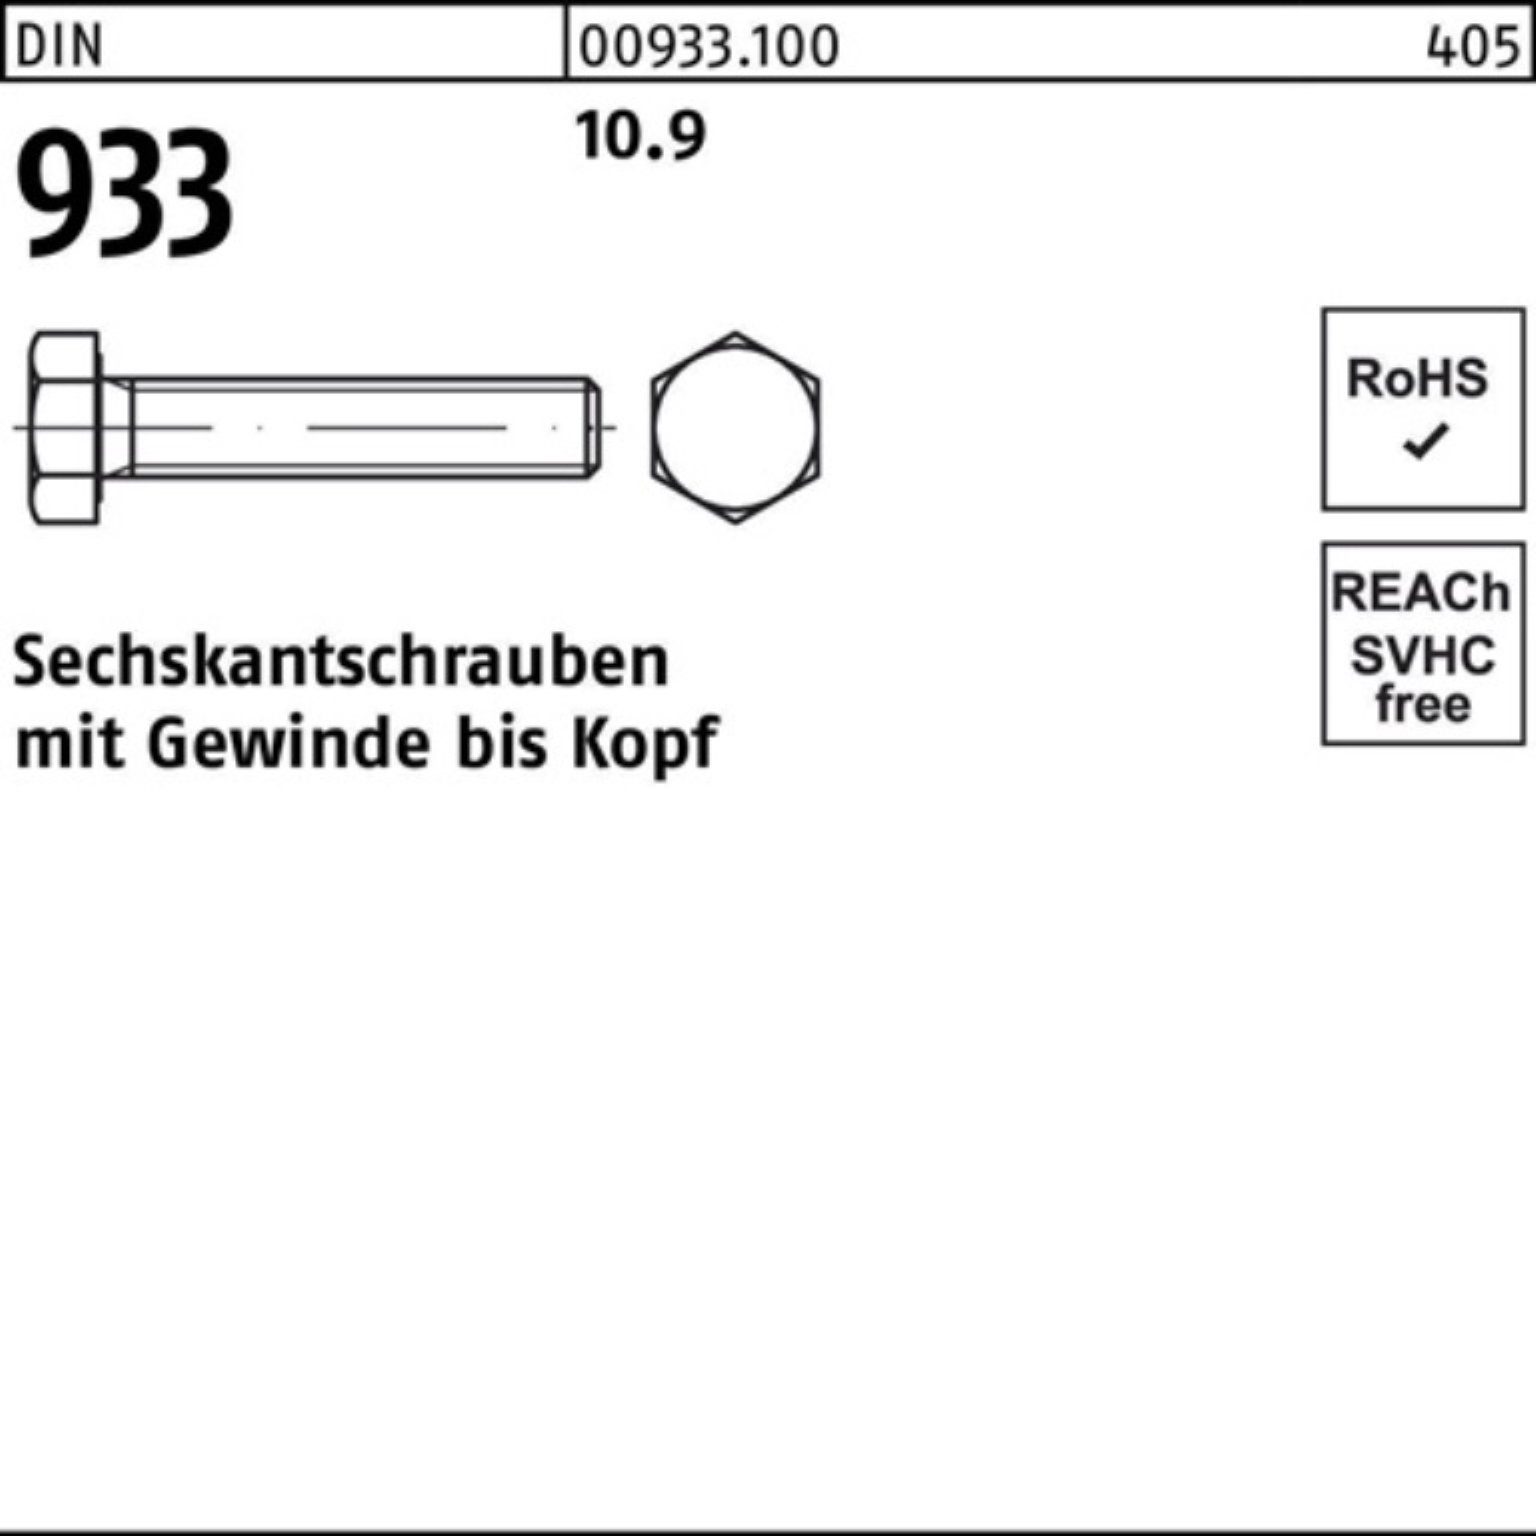 Reyher Sechskantschraube VG DIN Stück 933 DIN Pack M18x 10.9 60 100er Sechskantschraube 25 933